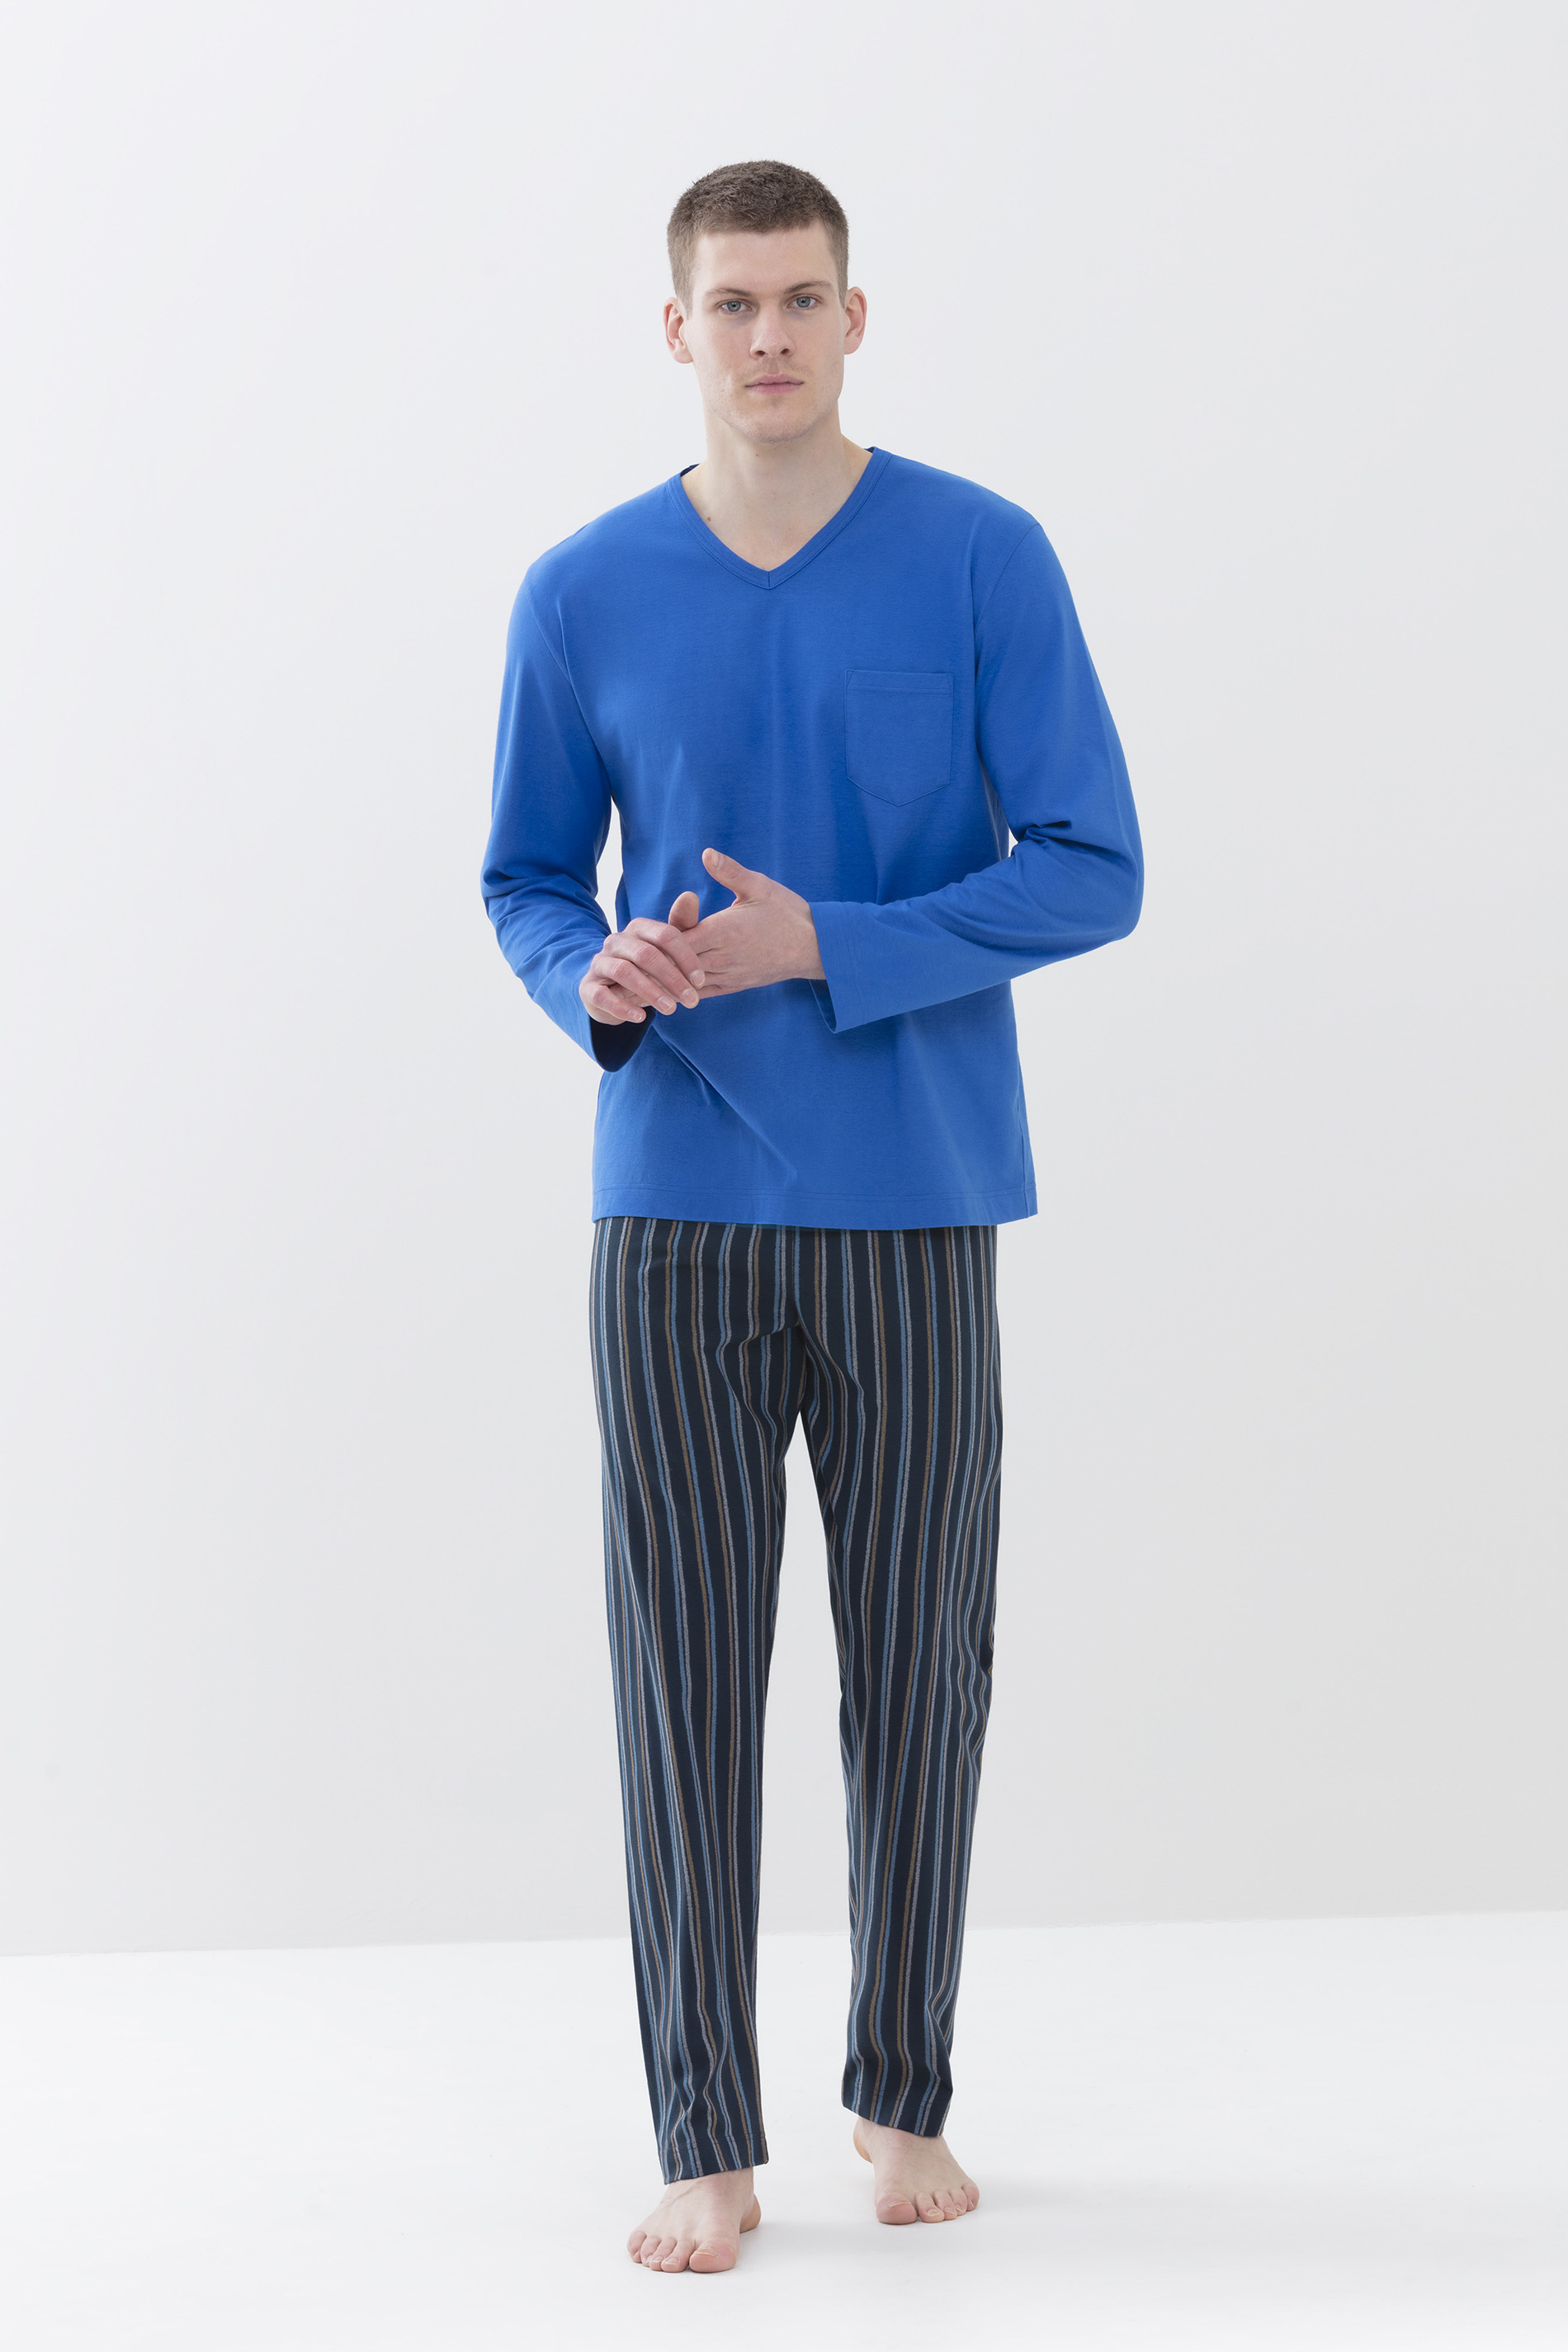 Pyjamas Porcelain Blue Serie Unregular Stripes Front View | mey®